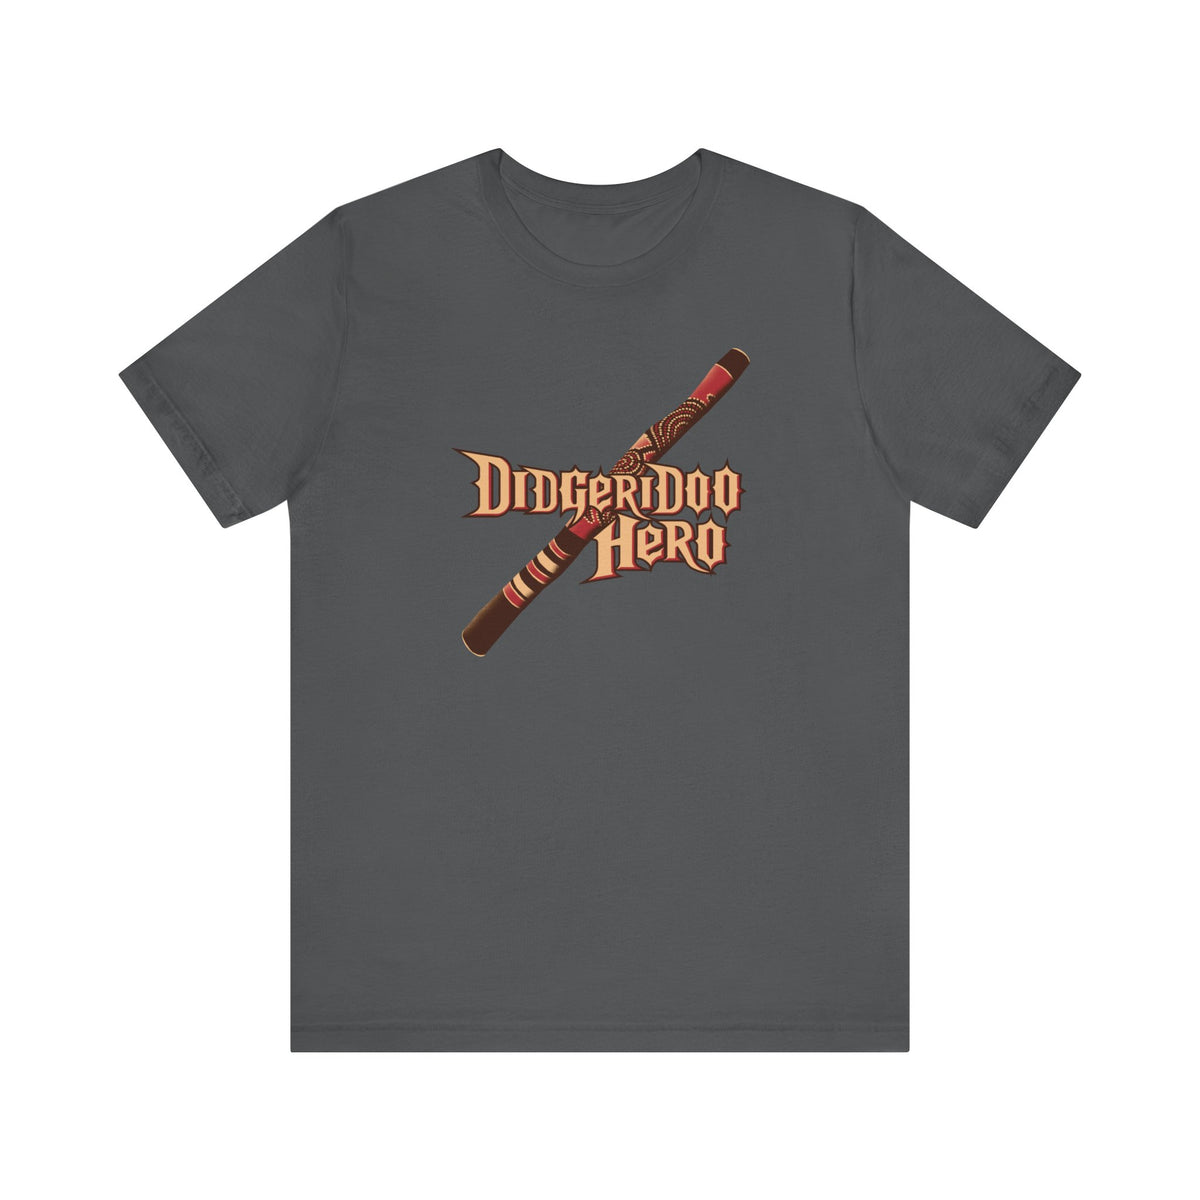 Didgeridoo Hero - Men's T-Shirt